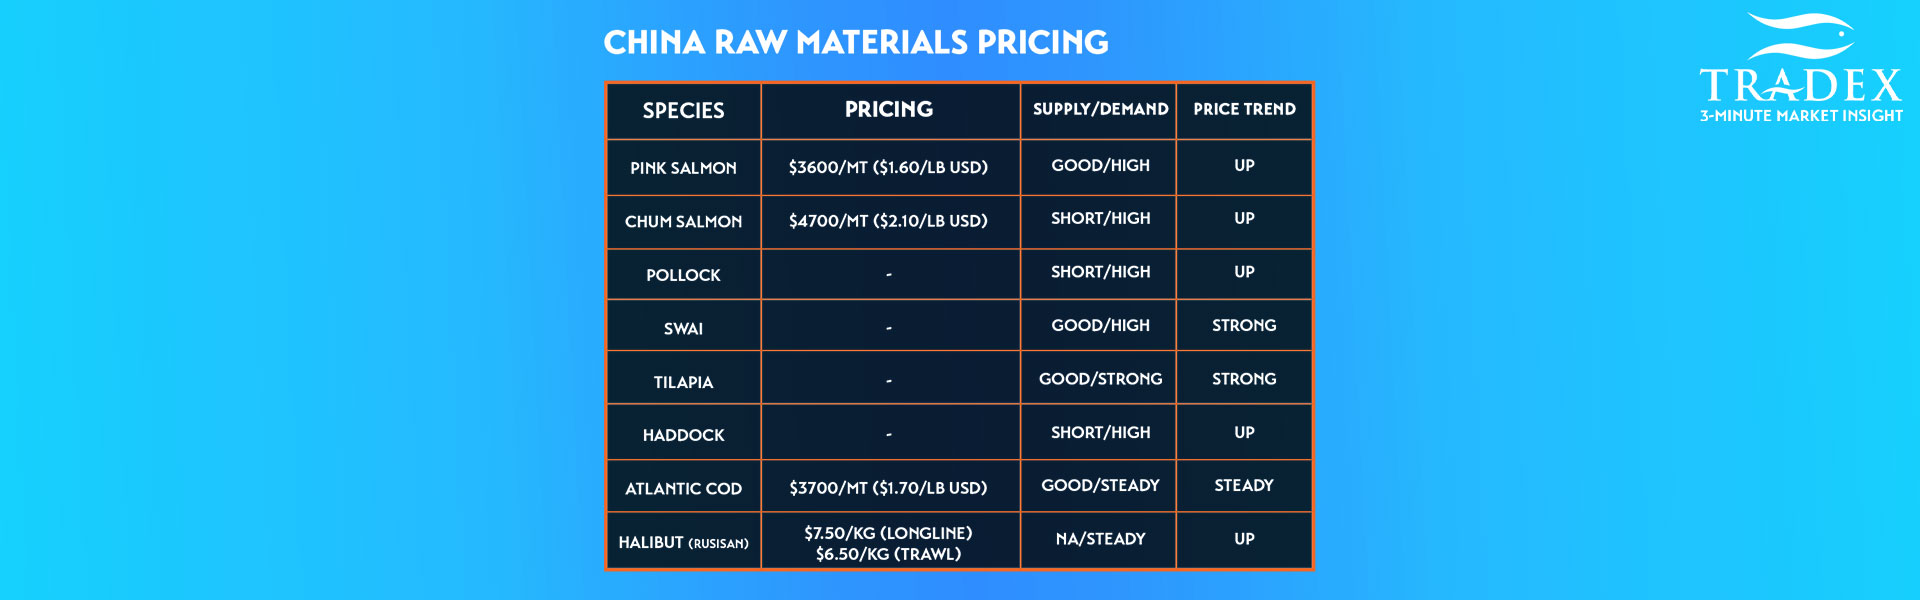 China Raw Materials Pricing